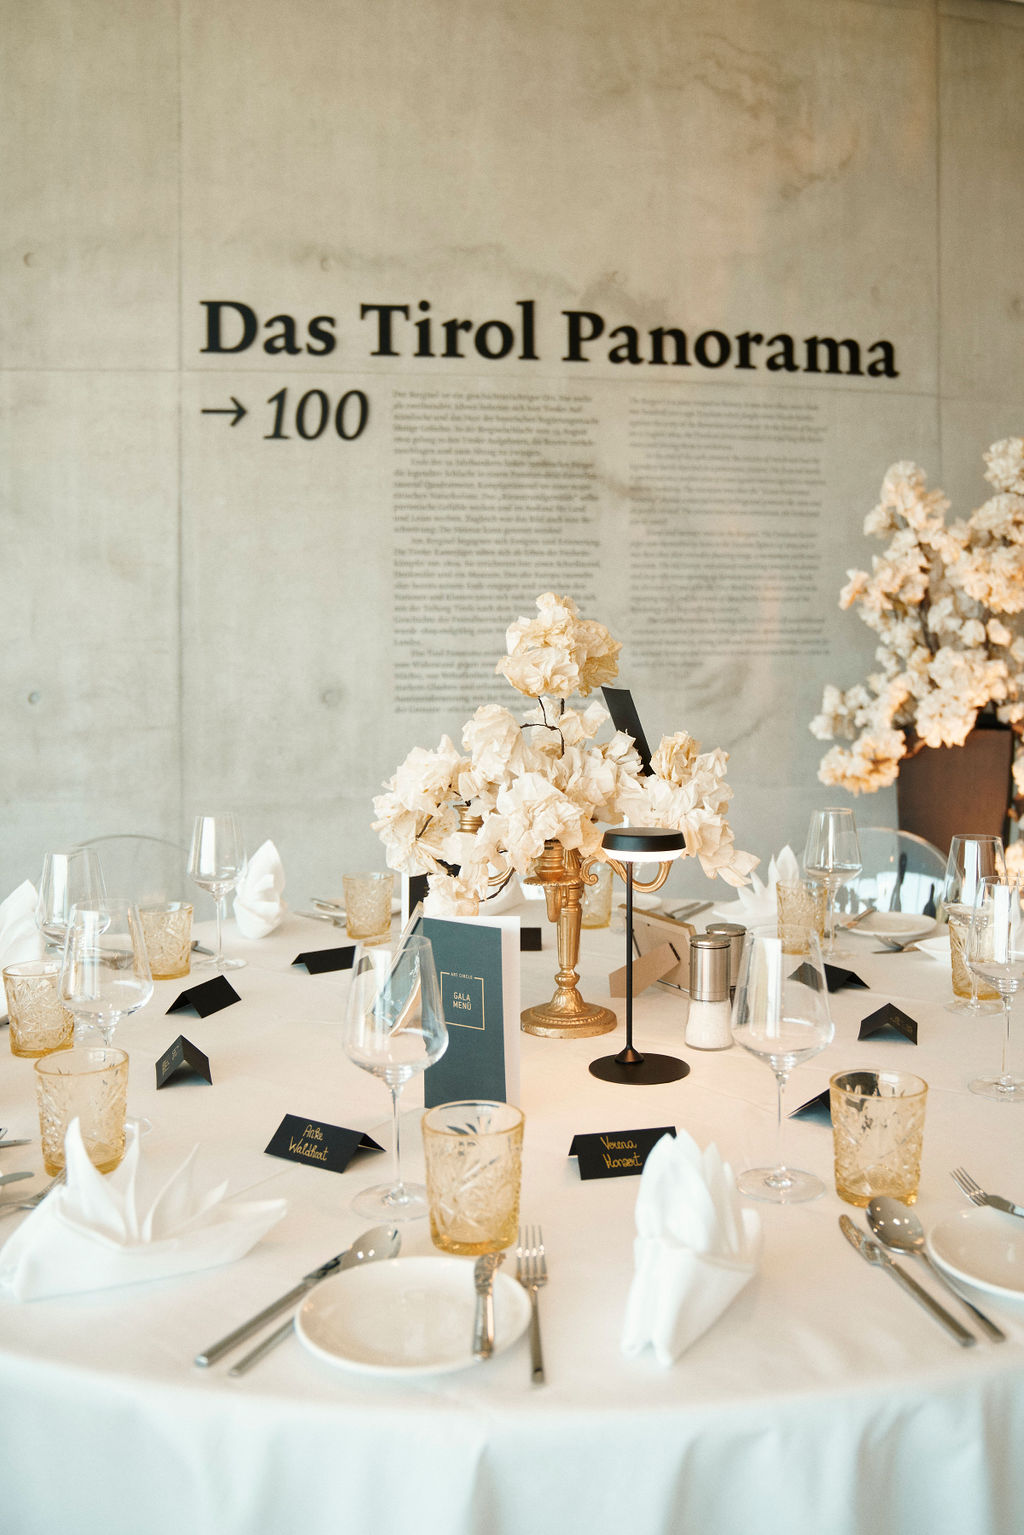 Das Tirol Panorama Art Circle Gala